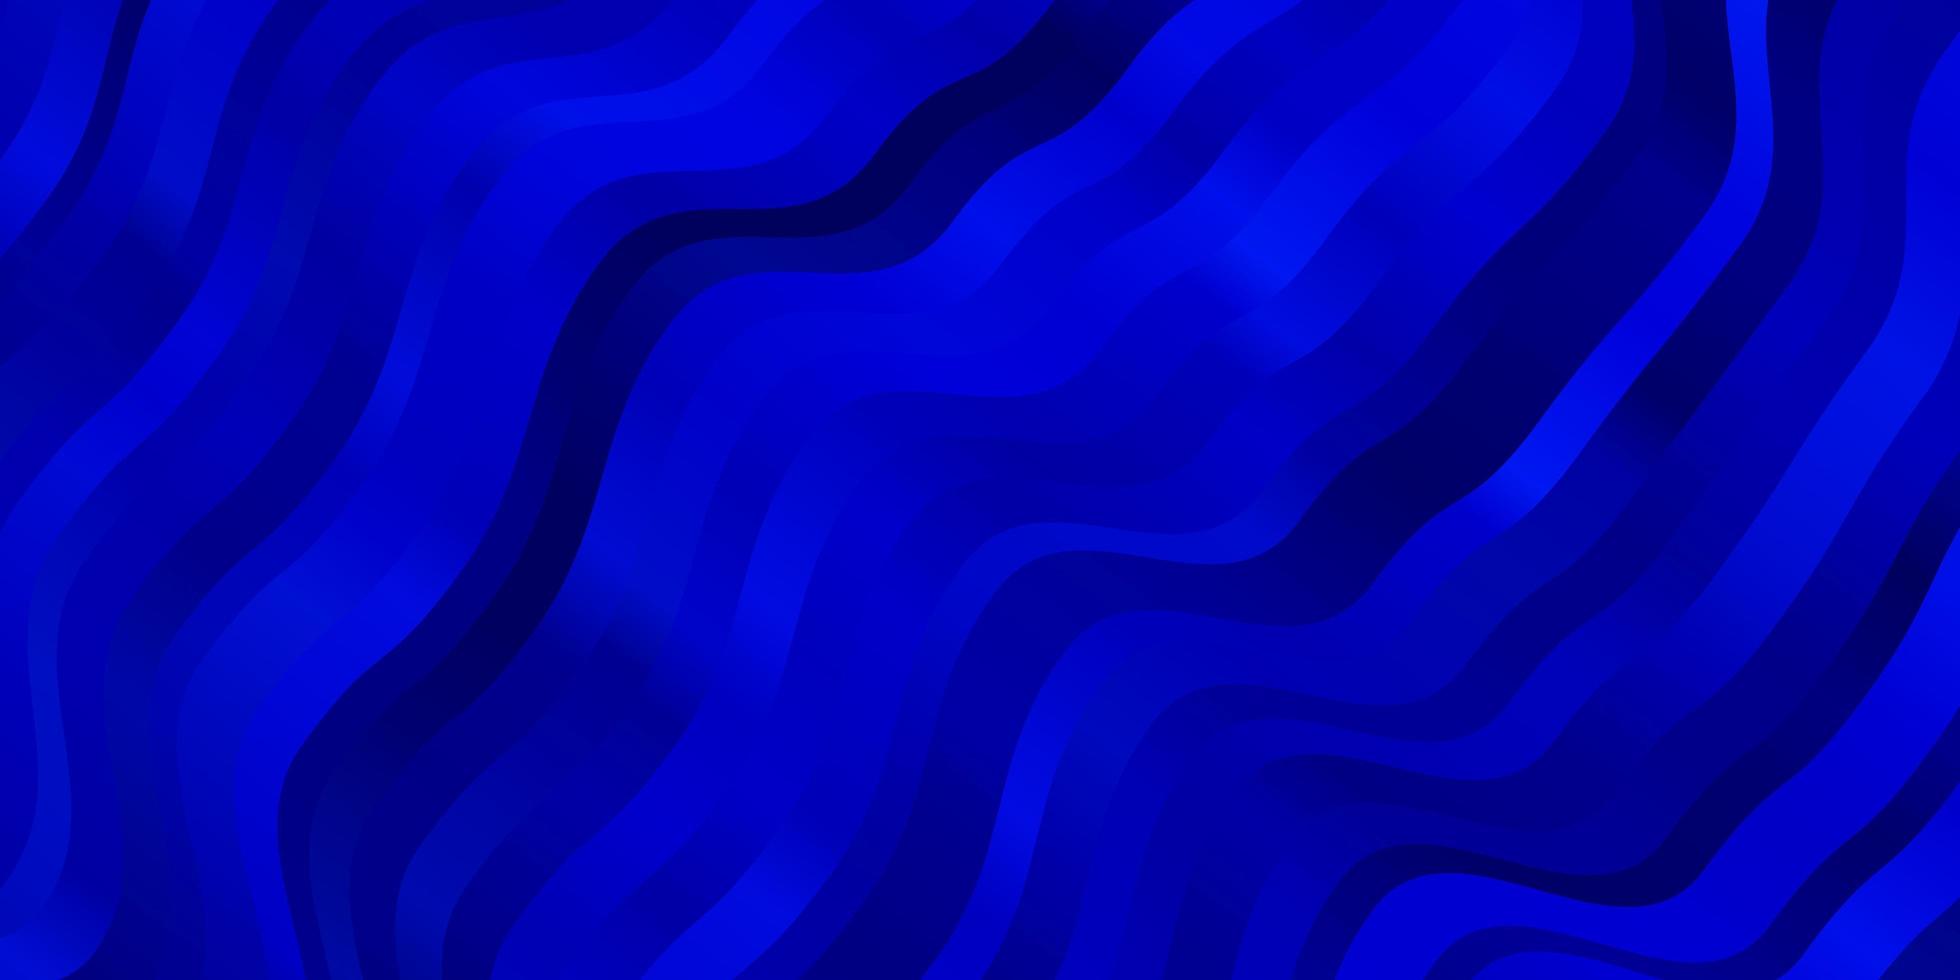 motif vectoriel bleu foncé avec des courbes illustration colorée avec motif de lignes courbes pour les publicités publicitaires